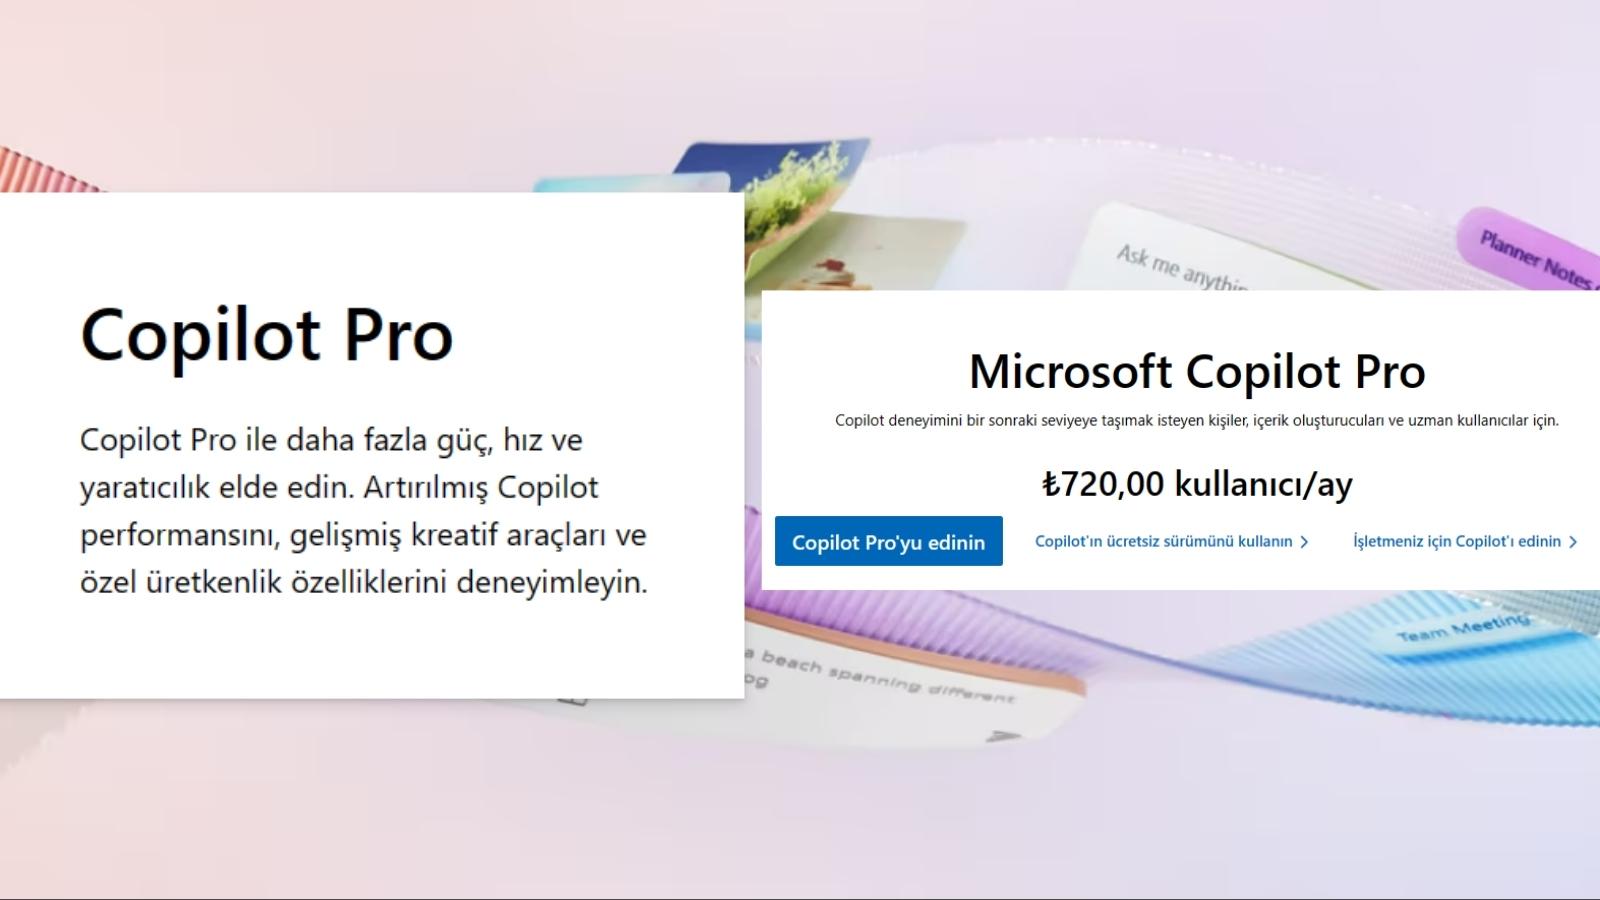 Microsoft Copilot Pro Türkiye'de Erişime Açıldı